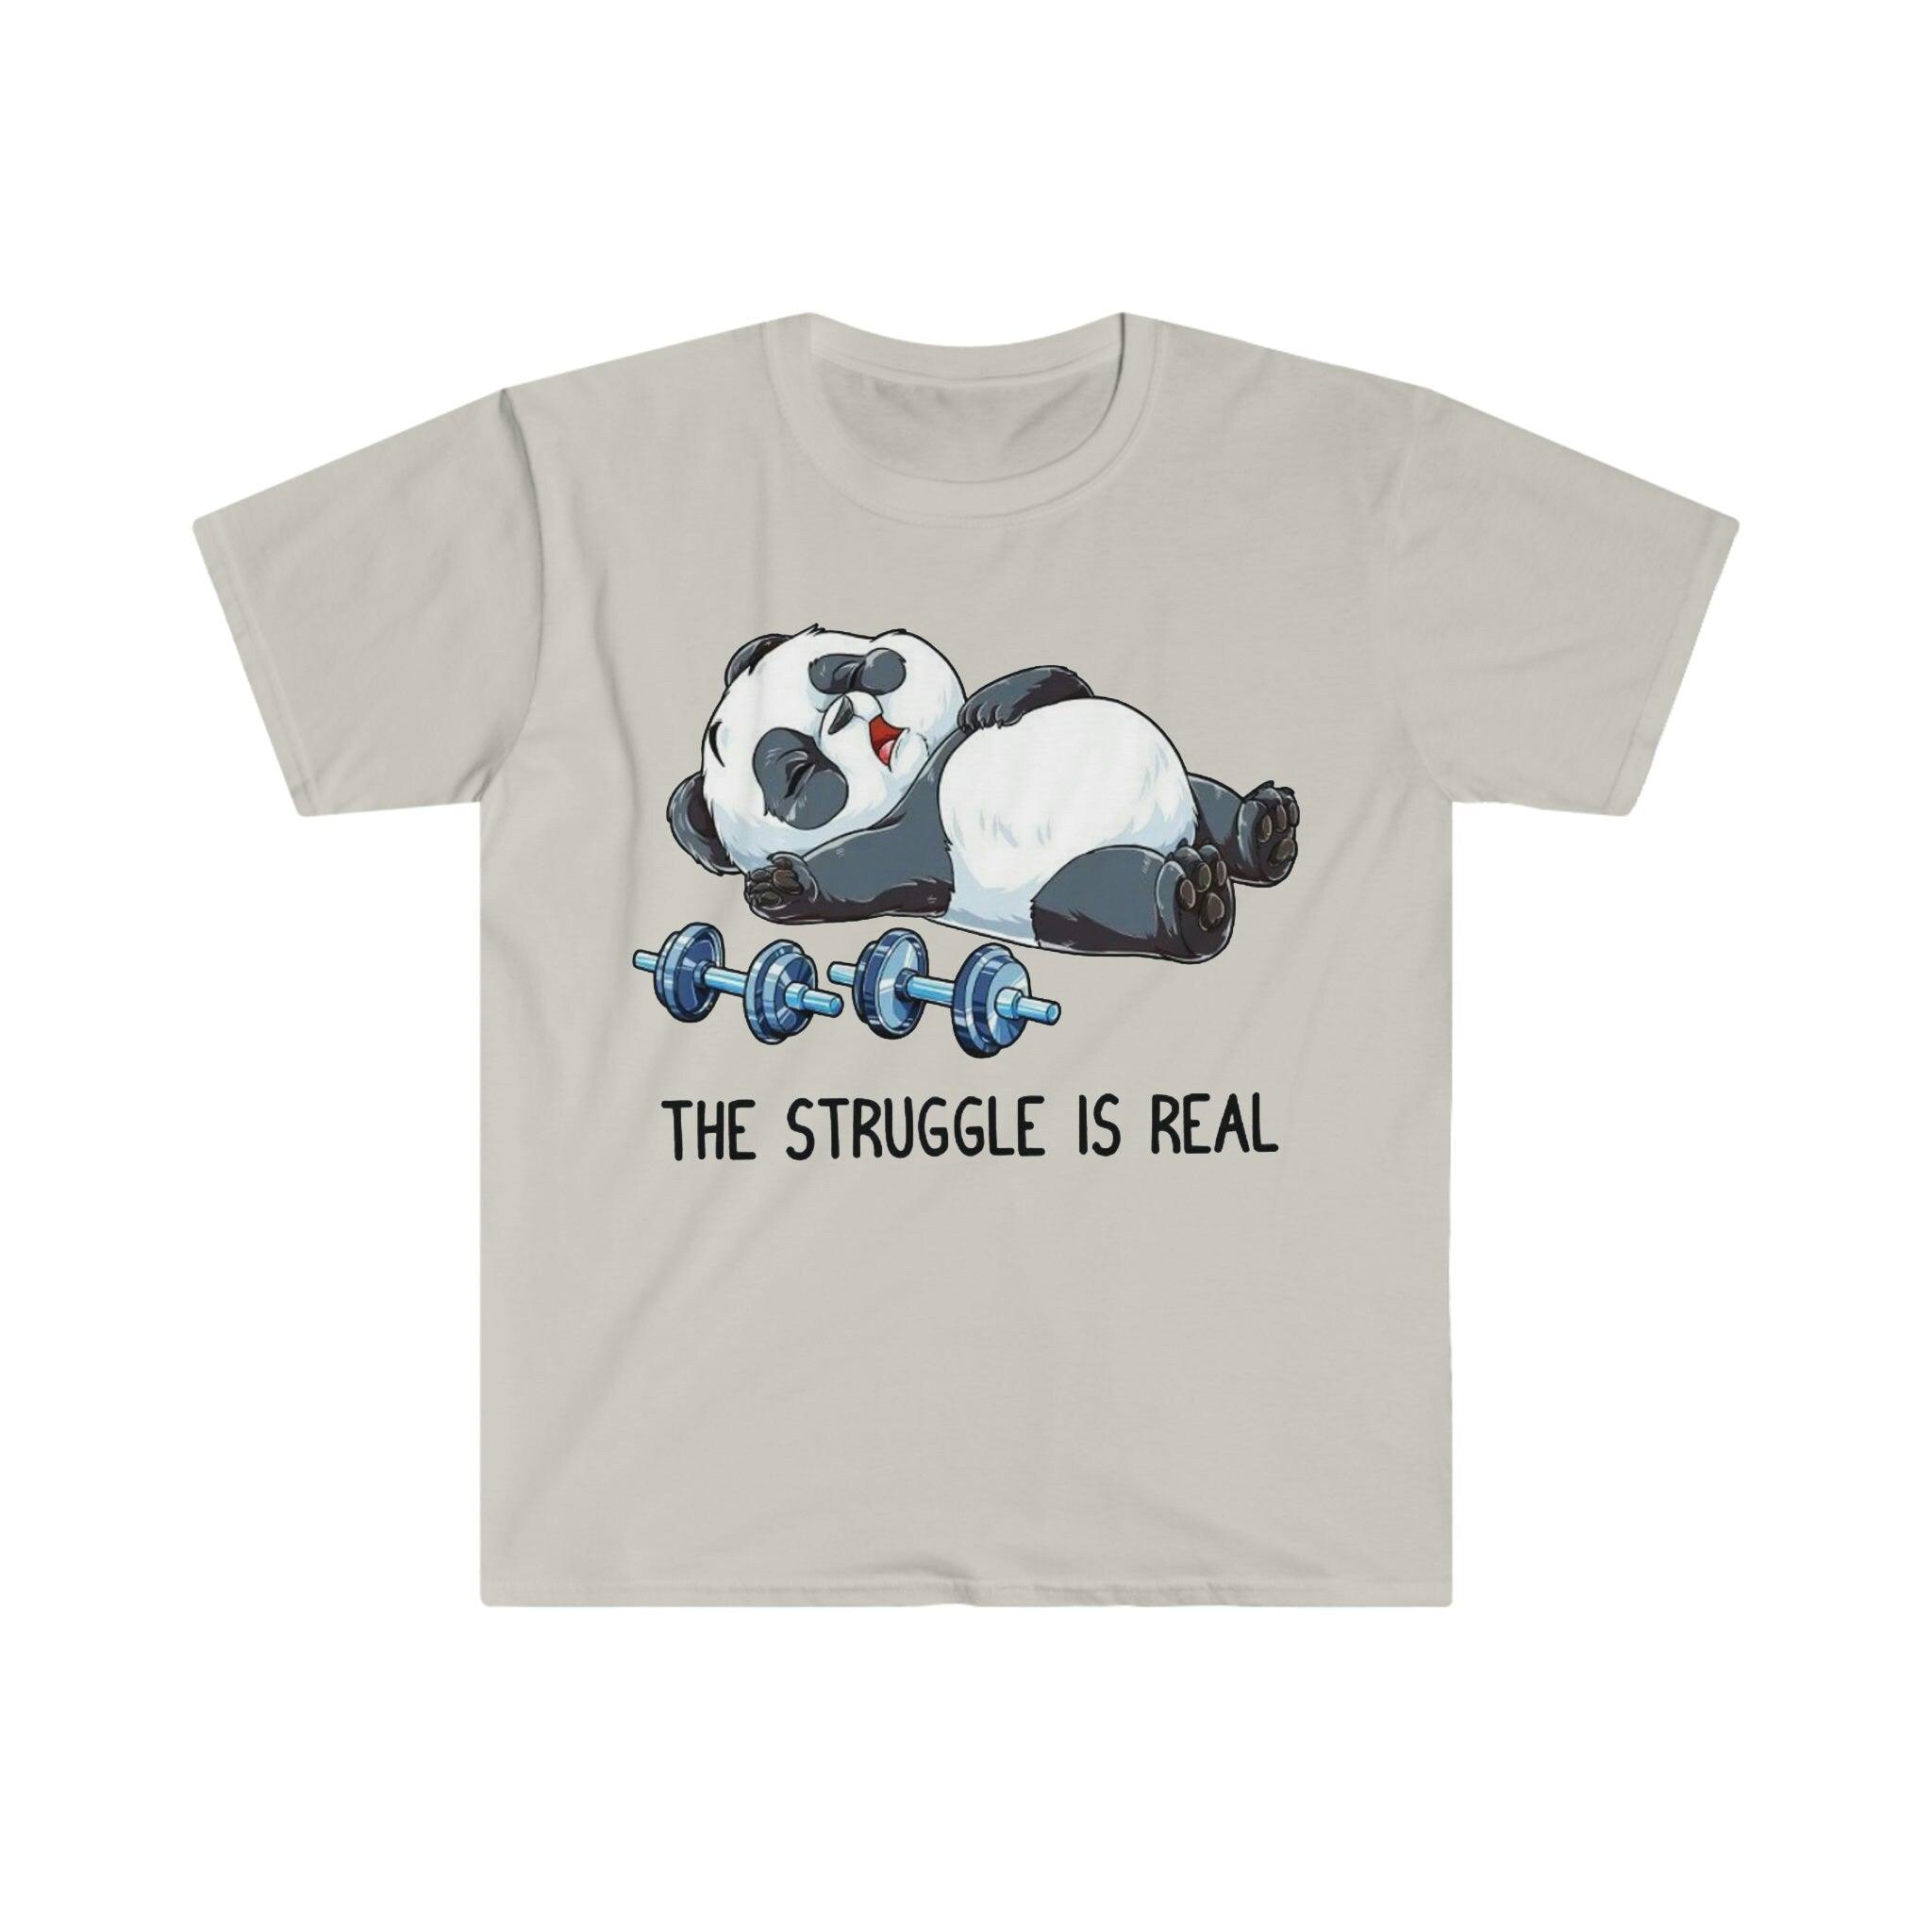 The Struggle Is Real Panda Футболки для тяжелой атлетики, Забавная футболка для фитнес-зала для тяжелой атлетики, Рубашка для тренировок, Рубашка для фитнеса Вес в режиме зверя, Забавный фитнес, Тренажерный зал, Рубашка для фитнеса, Забавный саркастичный тренажерный зал, Забавная футболка, футболка для упражнений в тренажерном зале, панда борьба, борьба реальна, Футболка, футболки, Тяжелая атлетика, панда для тяжелой атлетики, футболка для тяжелой атлетики, Рубашка для тренировок - plusminusco.com